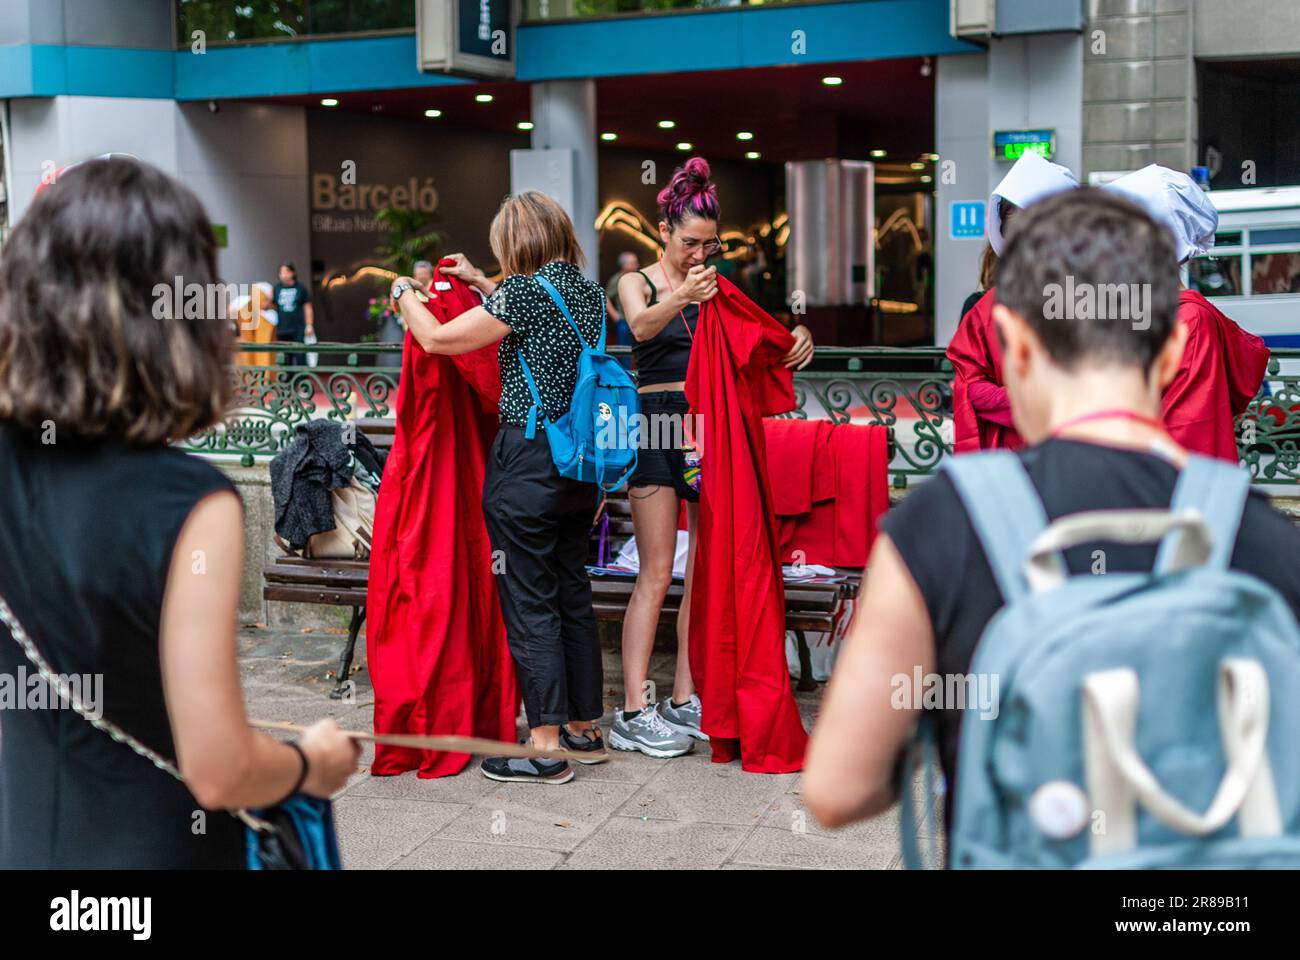 Radikale feministische Aktivisten, die in einem Kostüm aus der Serie "das Magazin" gekleidet sind, nehmen an einer Demonstration gegen die Leihmutterschaft Teil. Stockfoto